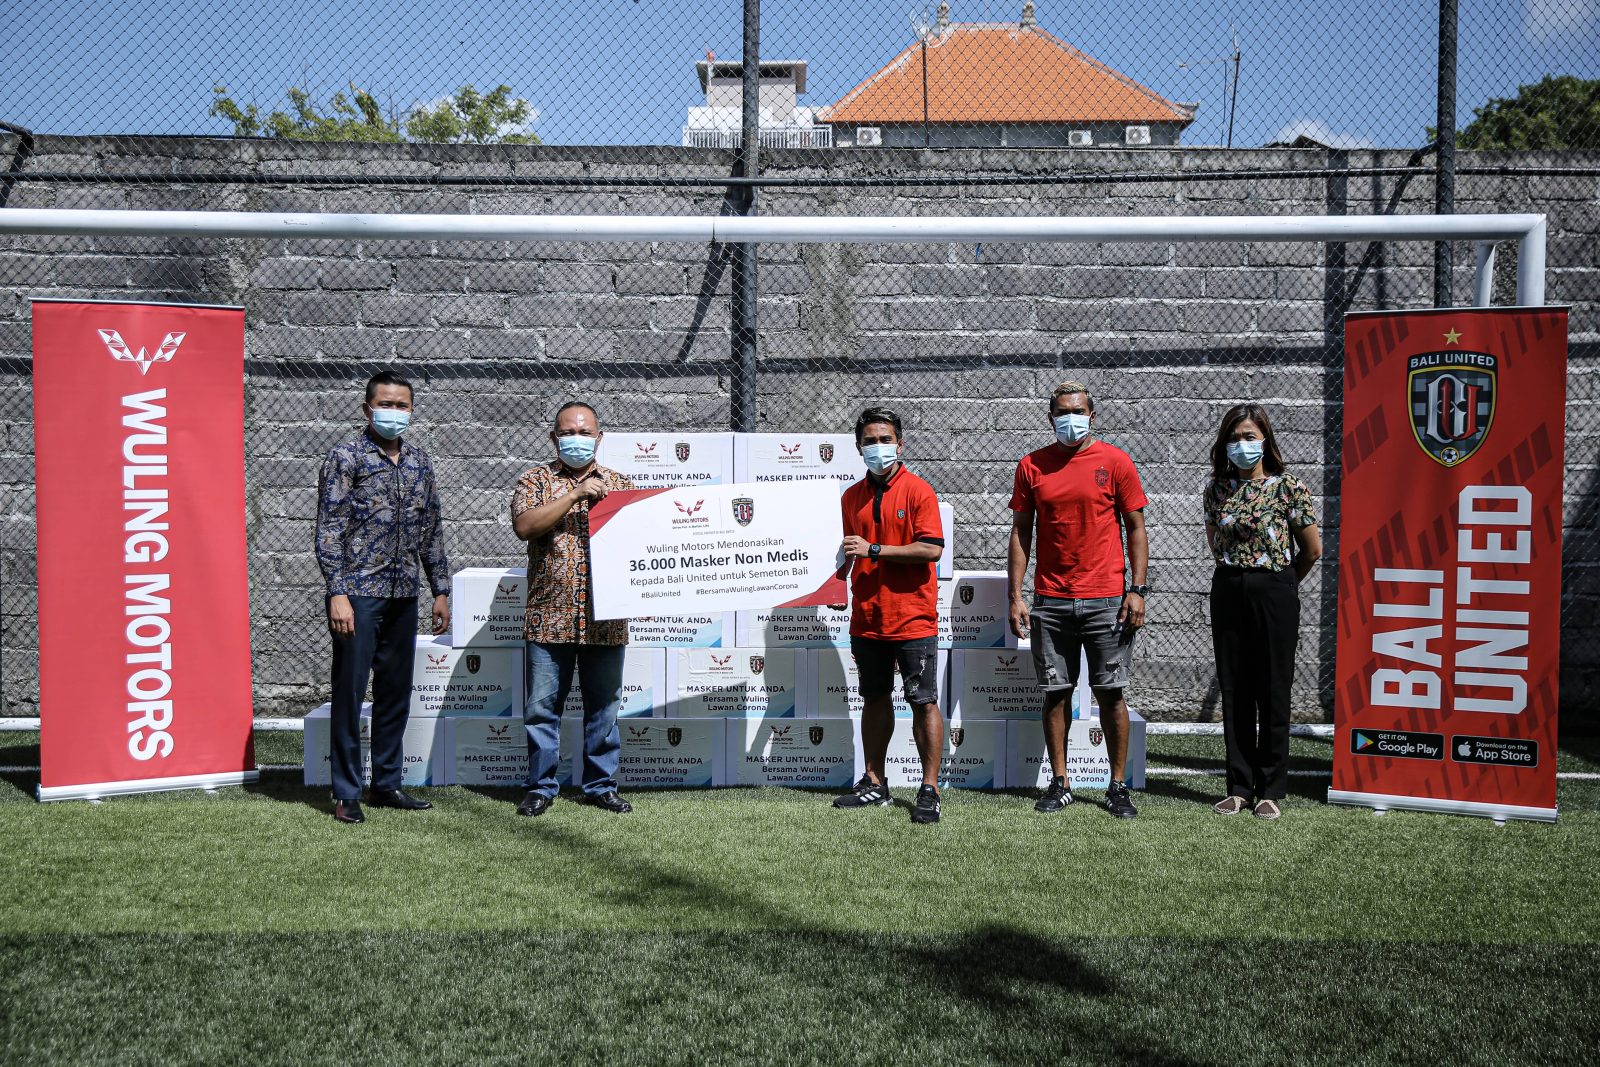 Image Bersama Bali United, Wuling Donasikan 36.000 Masker Non Medis Untuk Semeton Bali